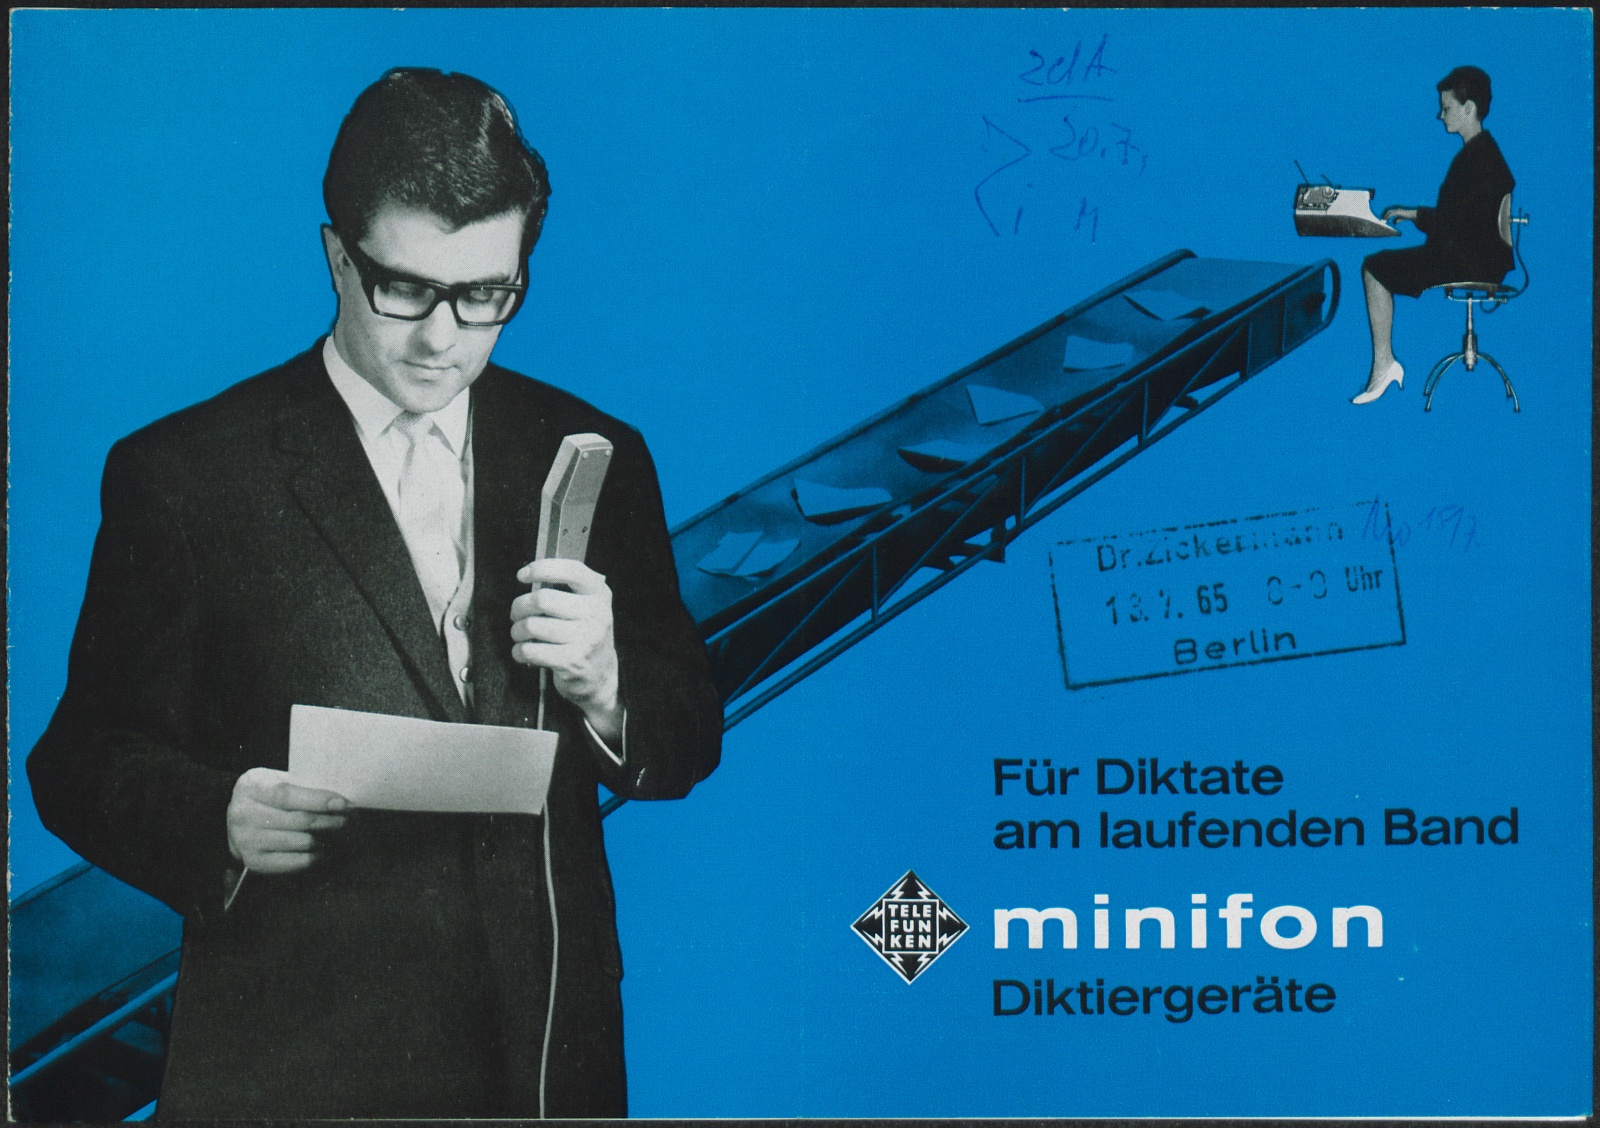 Werbeprospekt: Für Diktate am laufenden Band; minifon Diktiergeräte (Stiftung Deutsches Technikmuseum Berlin CC0)